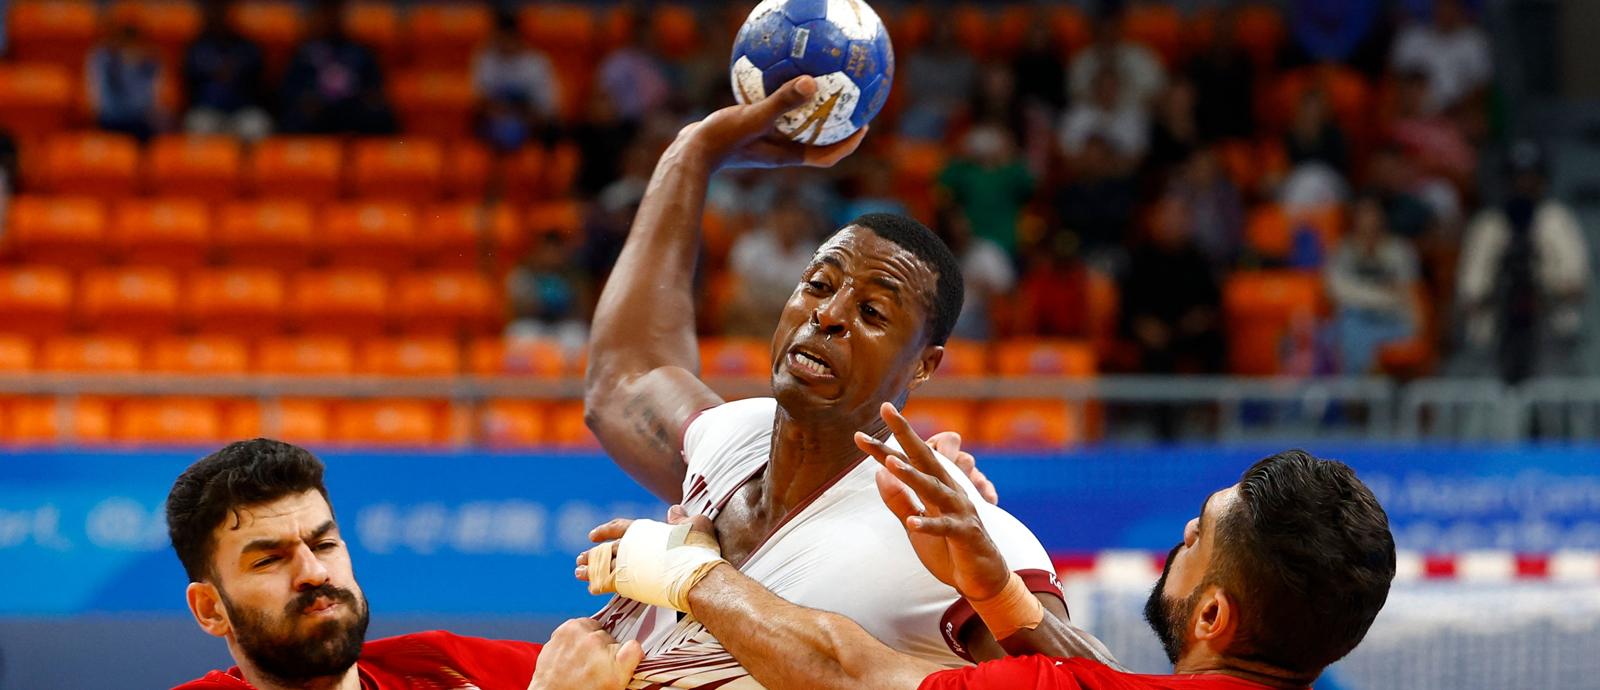 Qatar Handball Team Wins Gold Medal